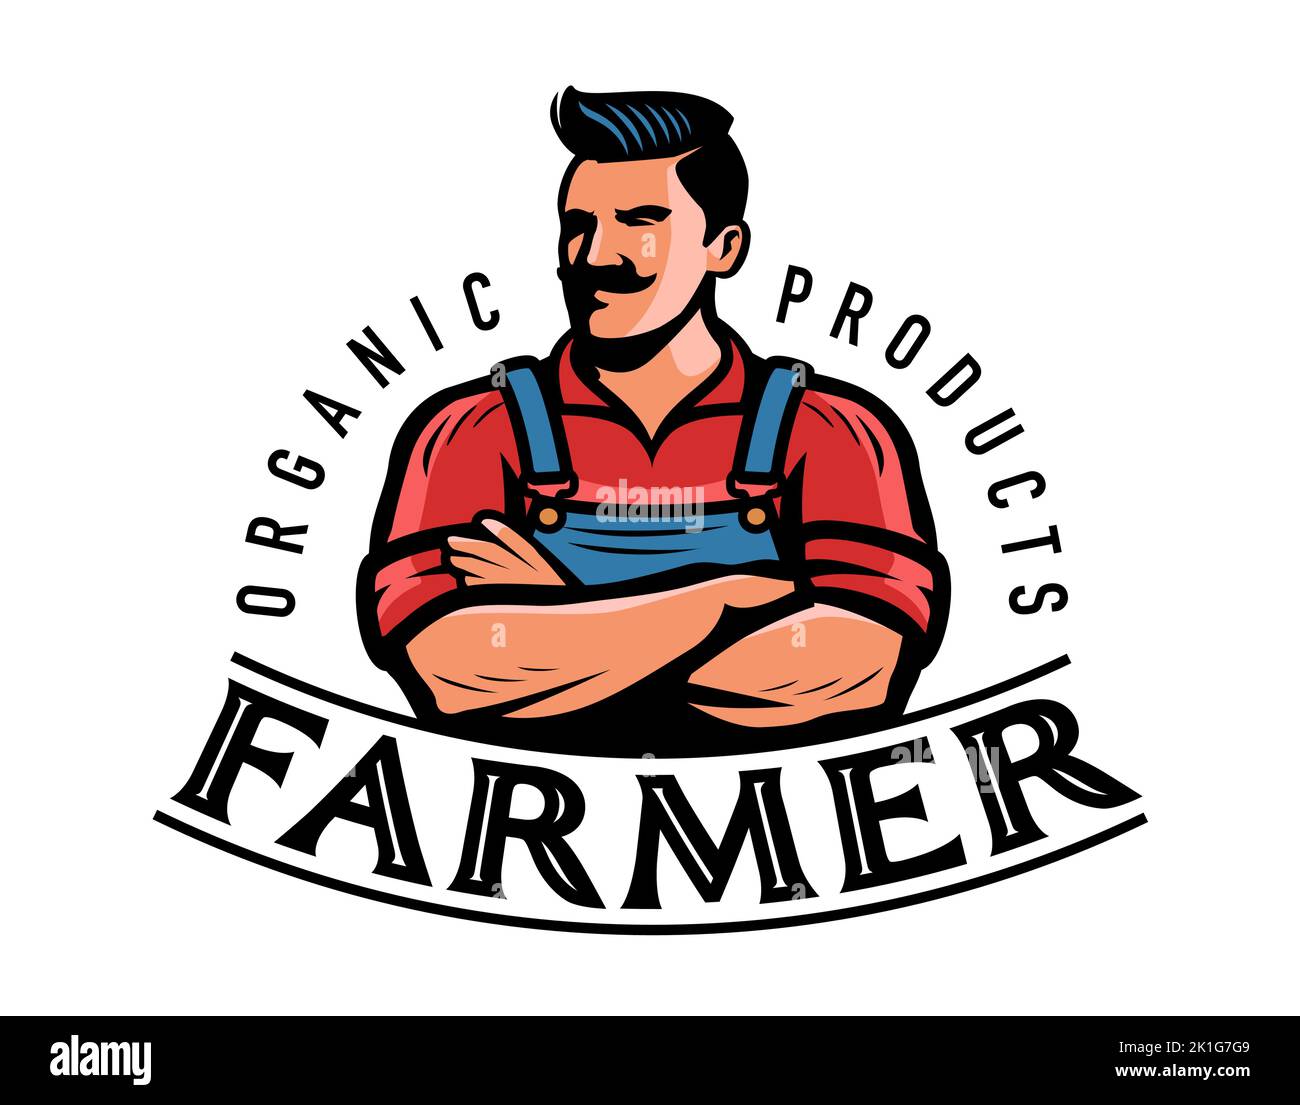 Farmer-Logo oder -Emblem. Bauernhof, Landwirtschaft, Landwirtschaft Abzeichen. Organische natürliche Lebensmittel Symbol Vektor-Illustration Stock Vektor